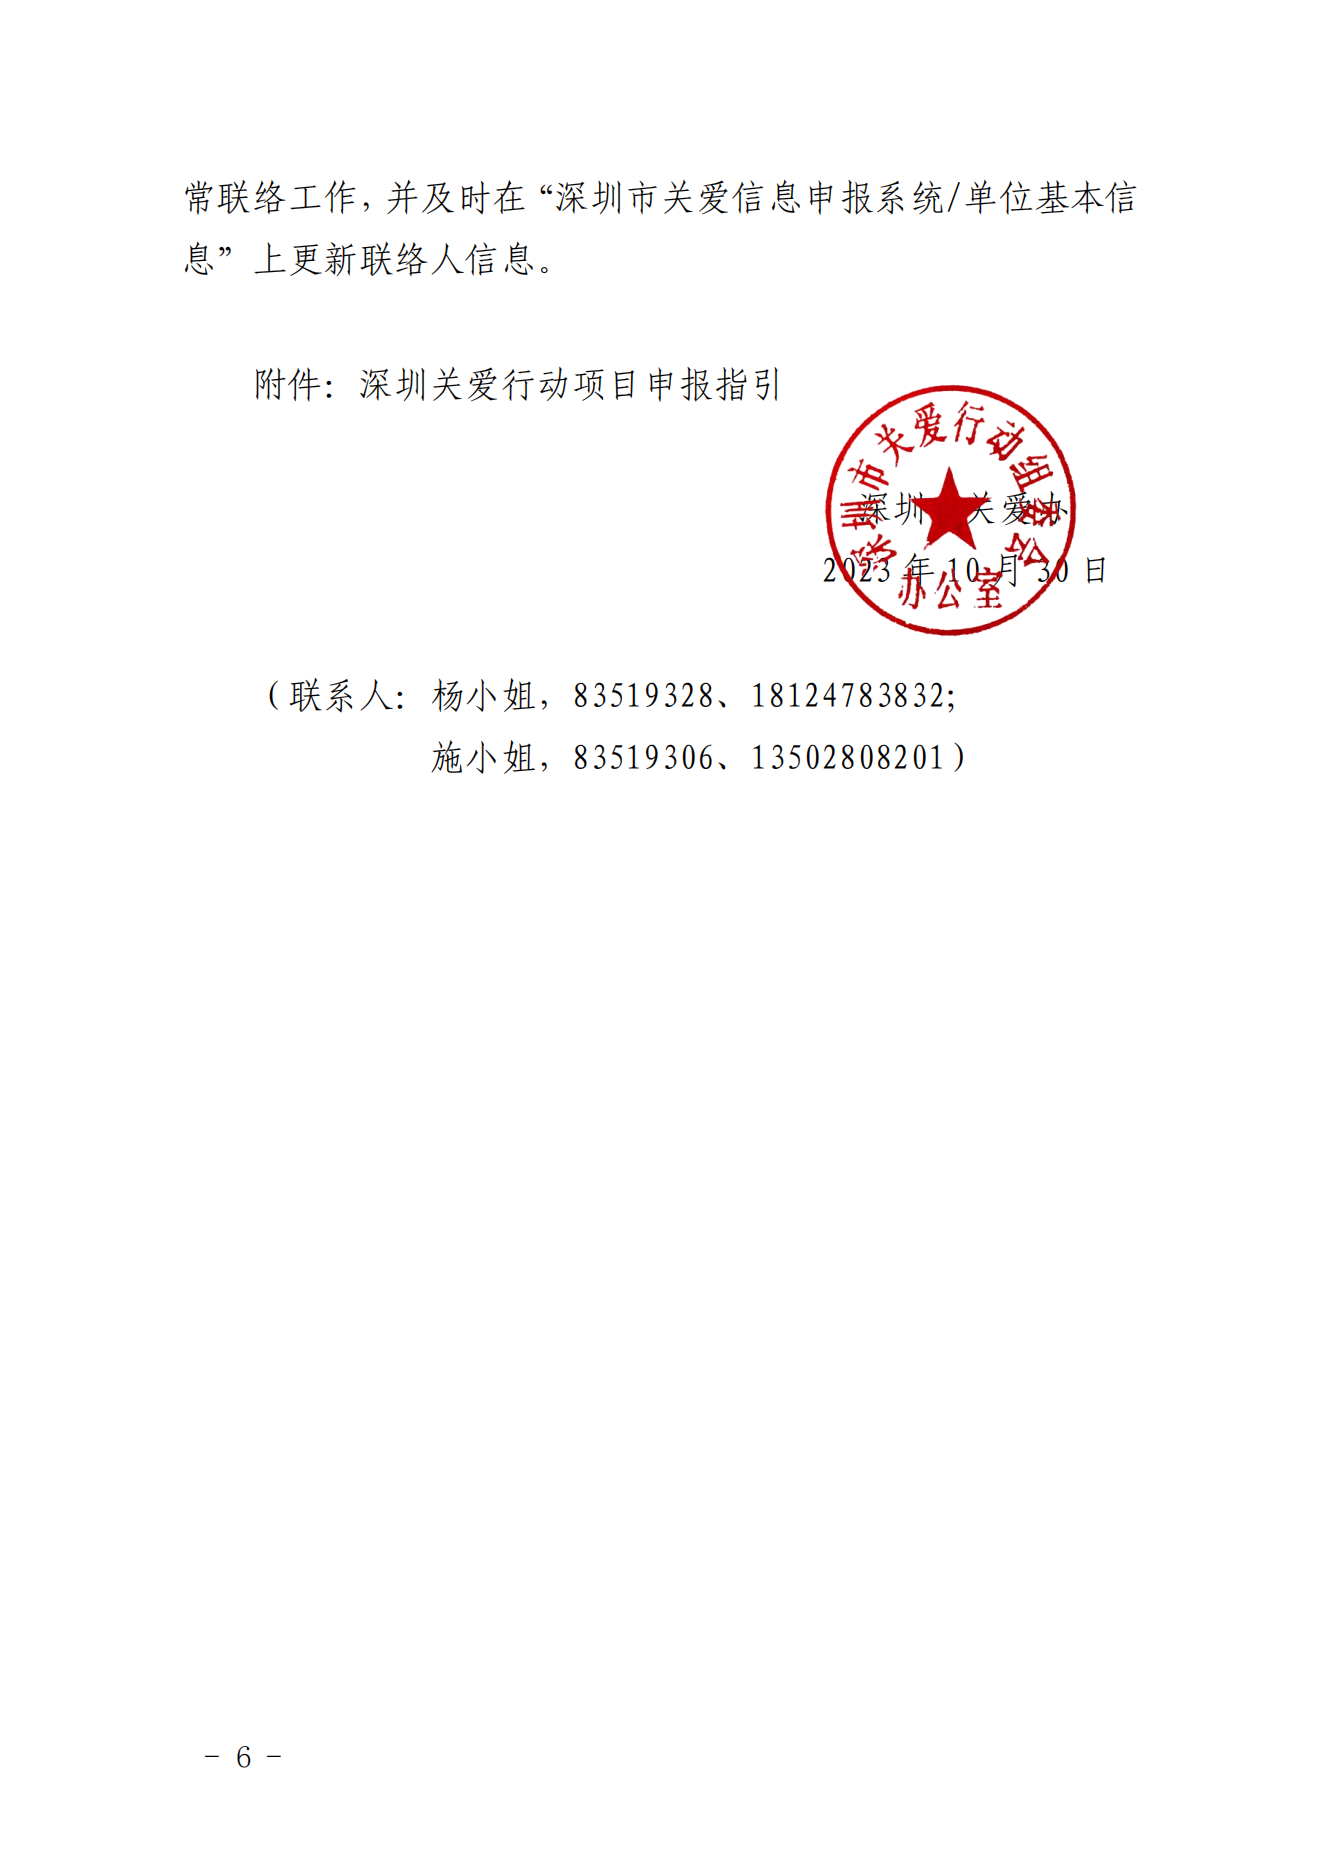 【定稿】关于做好第二十一届深圳关爱行动组织策划和项目申报工作的通知_05.png